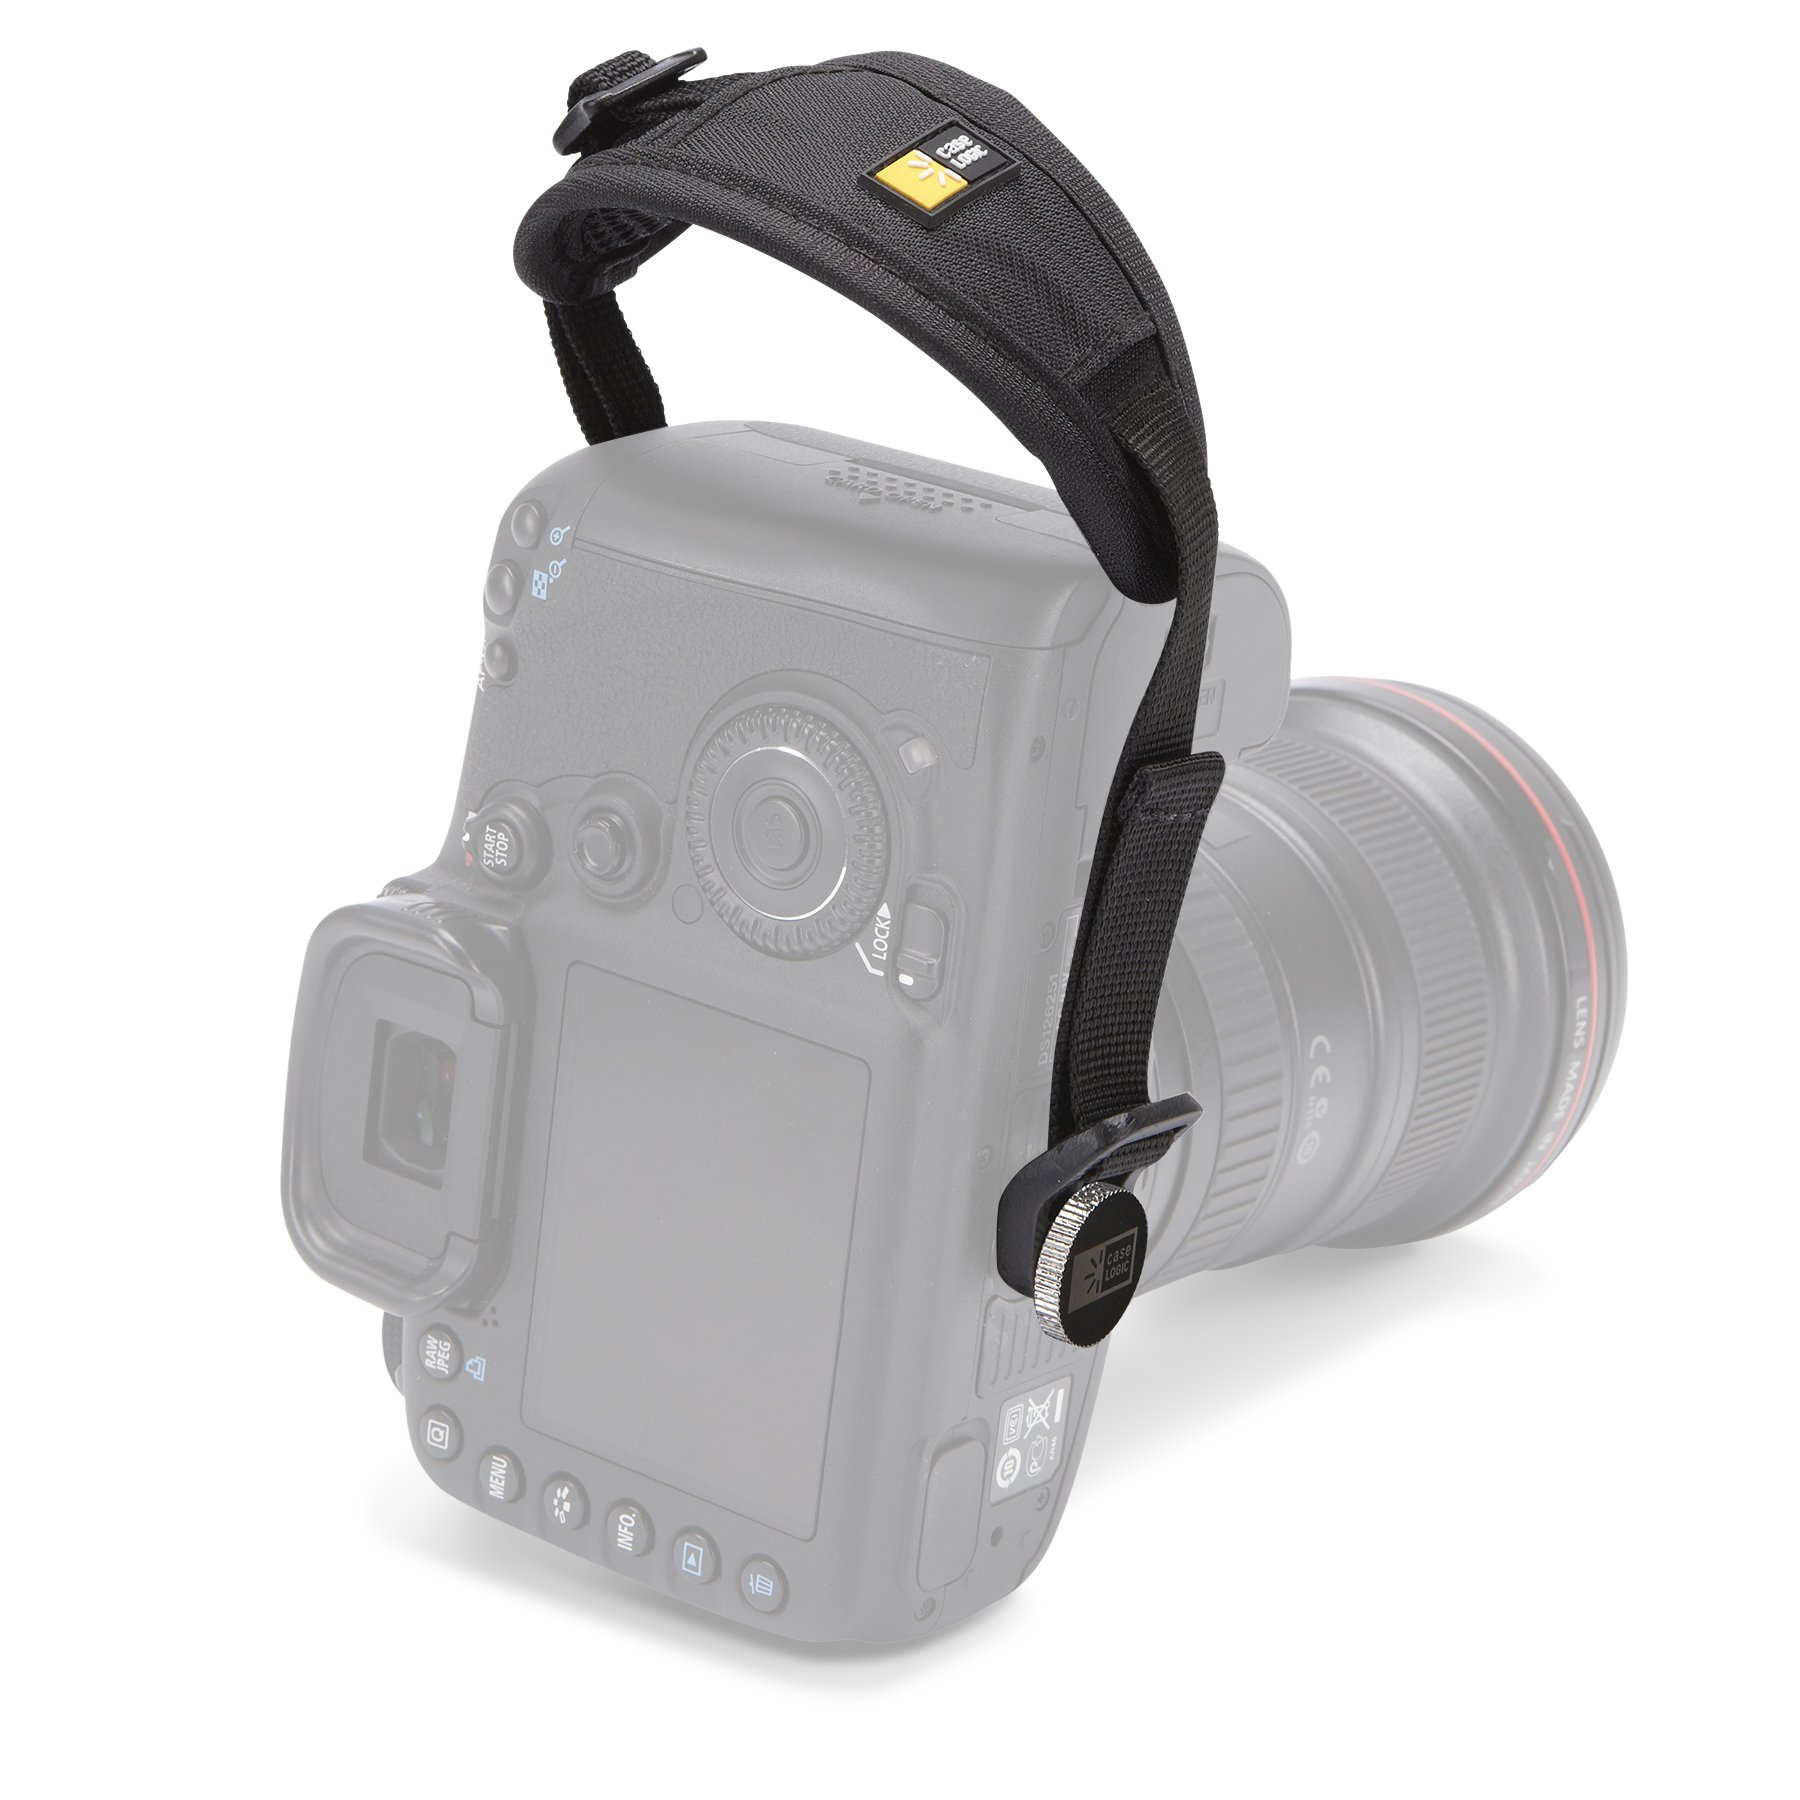 جراب لحماية لكاميرا دي اس ال ار بمقبض من كيس لوجيك DHS-101، لون اسود، 5.5 بوصة * 2.0 بوصة*0.2 بوصة